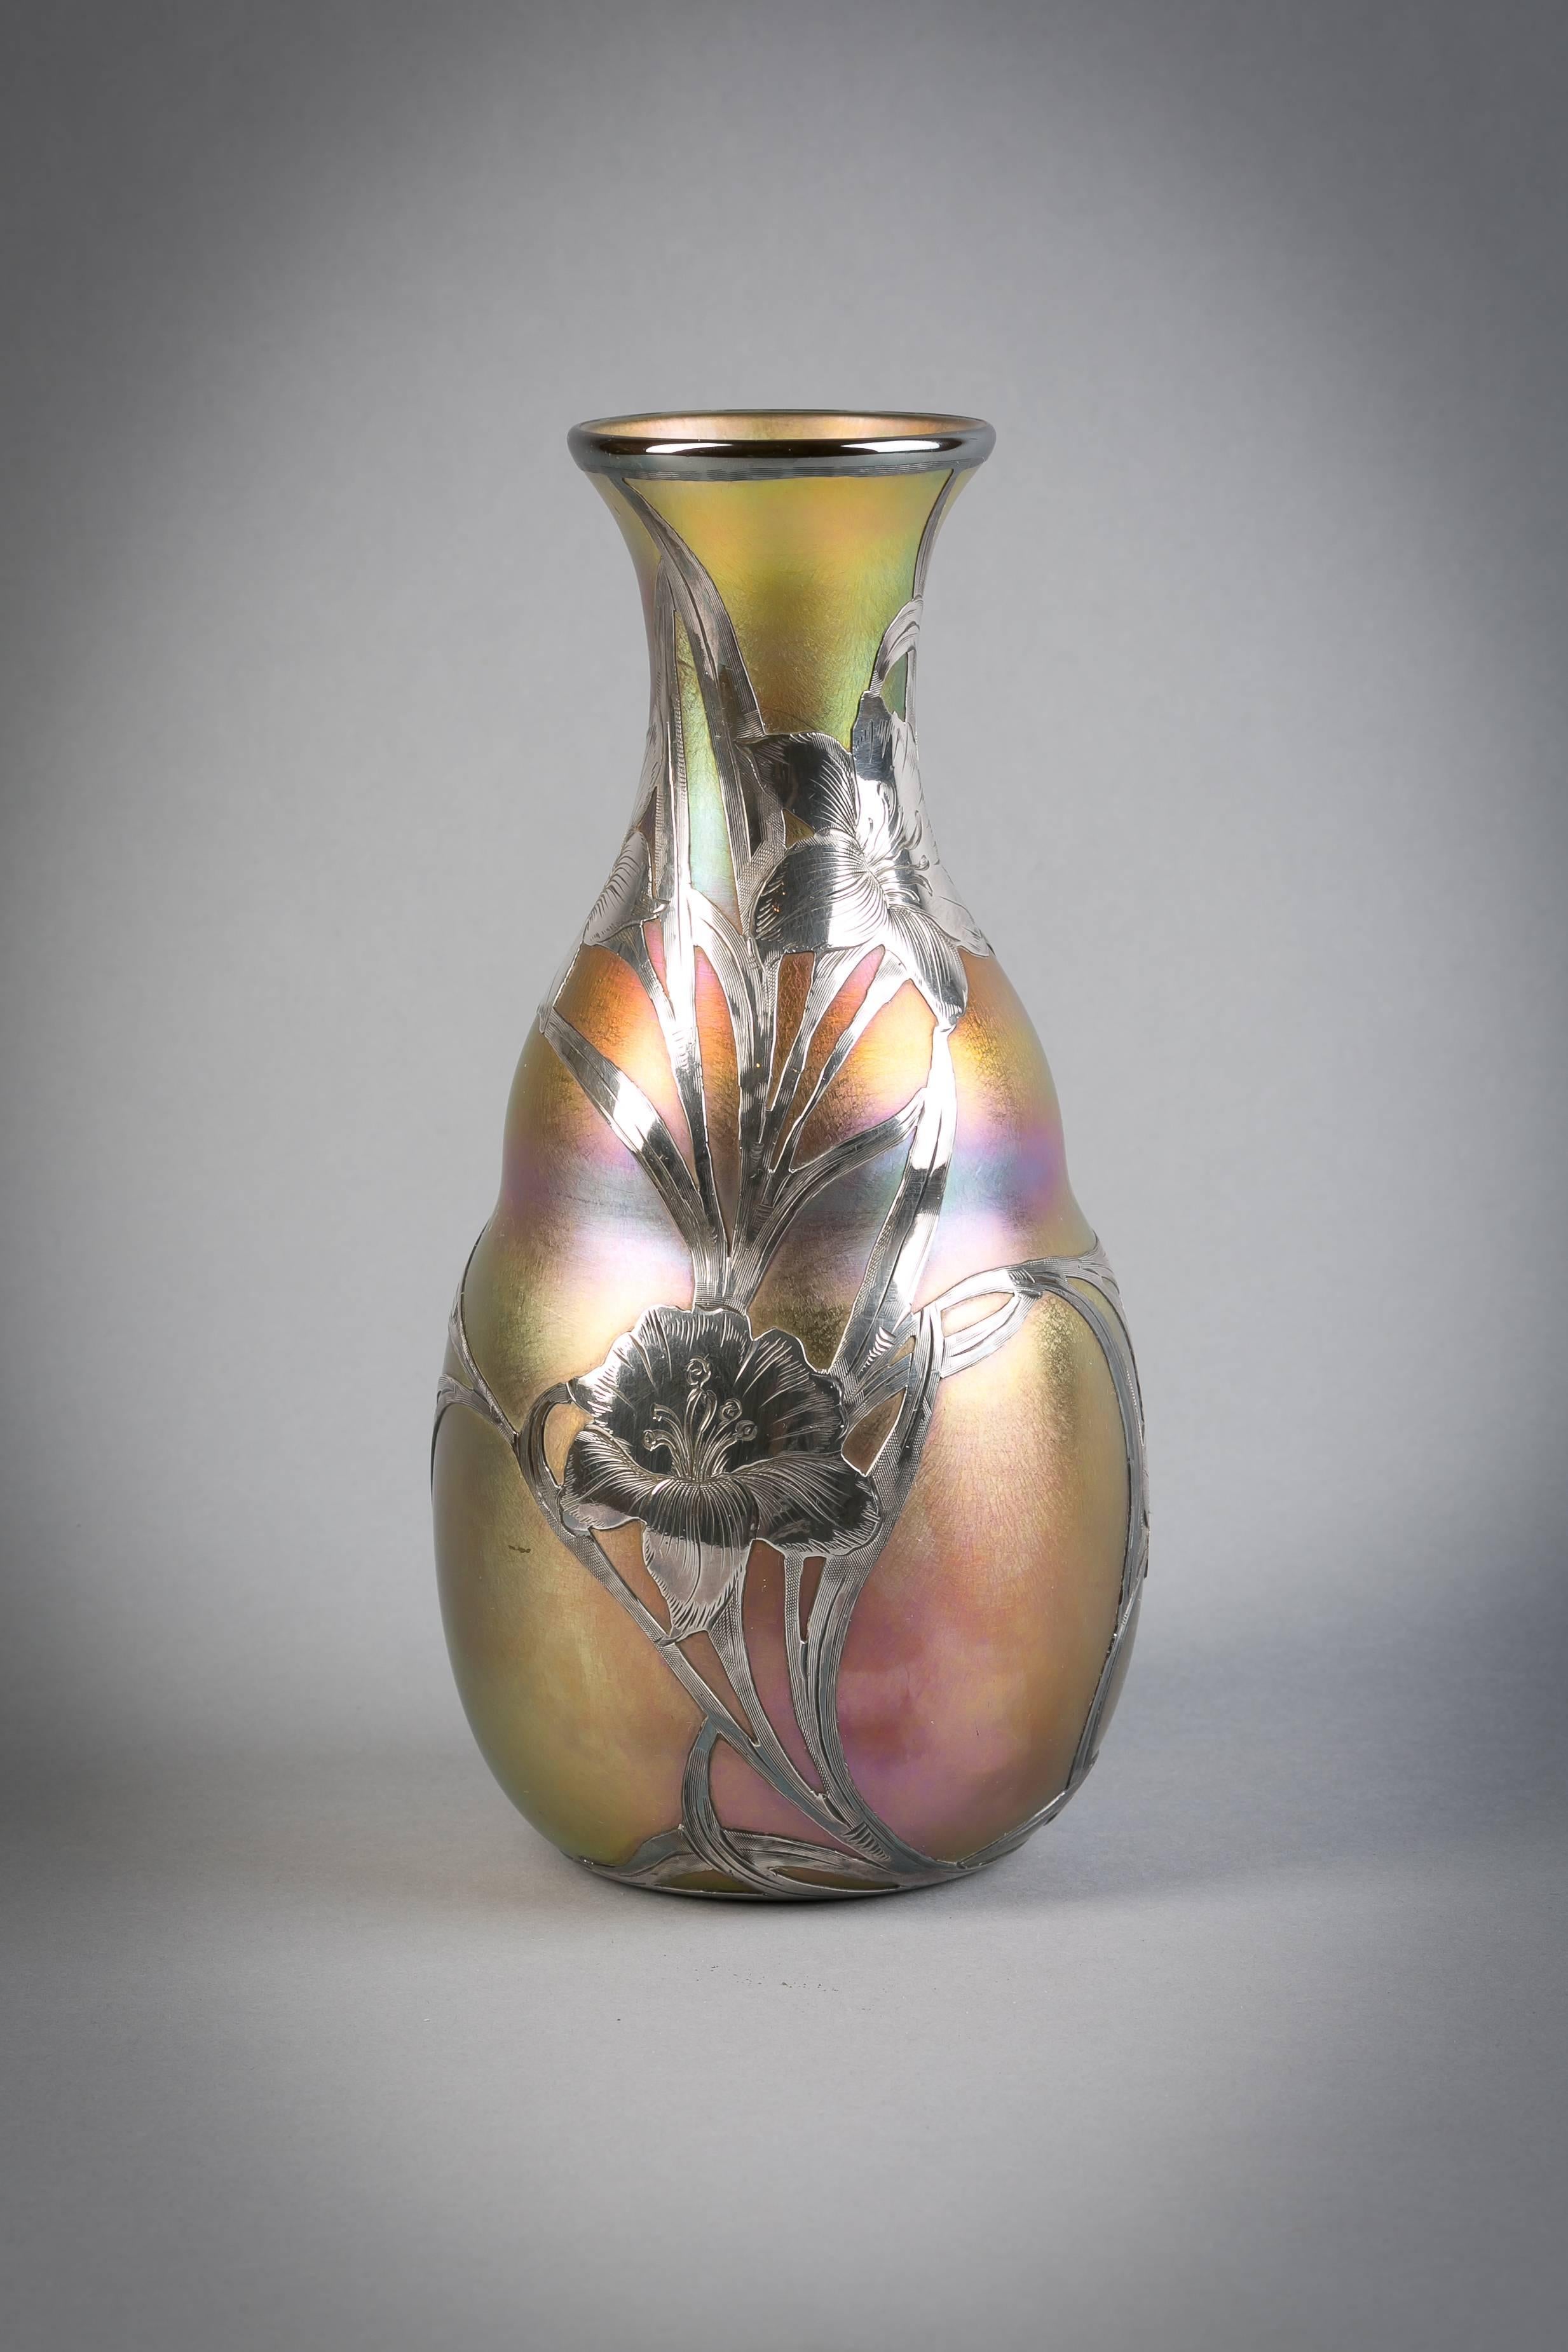 Silver overlay vase, Quezal, circa 1900

Signed Quezal.